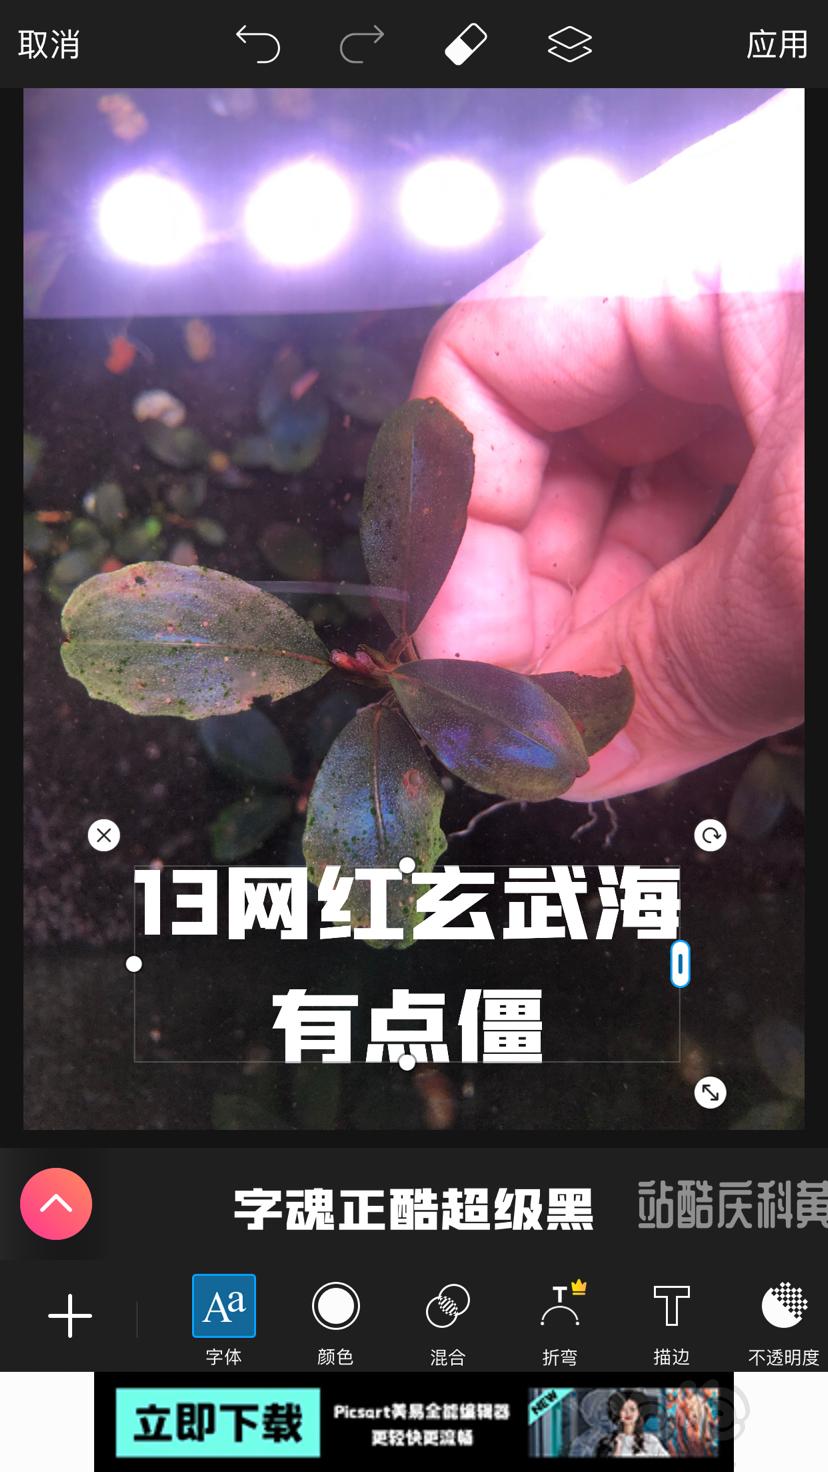 【辣椒榕】北京周边出点11蓝和老货-图4